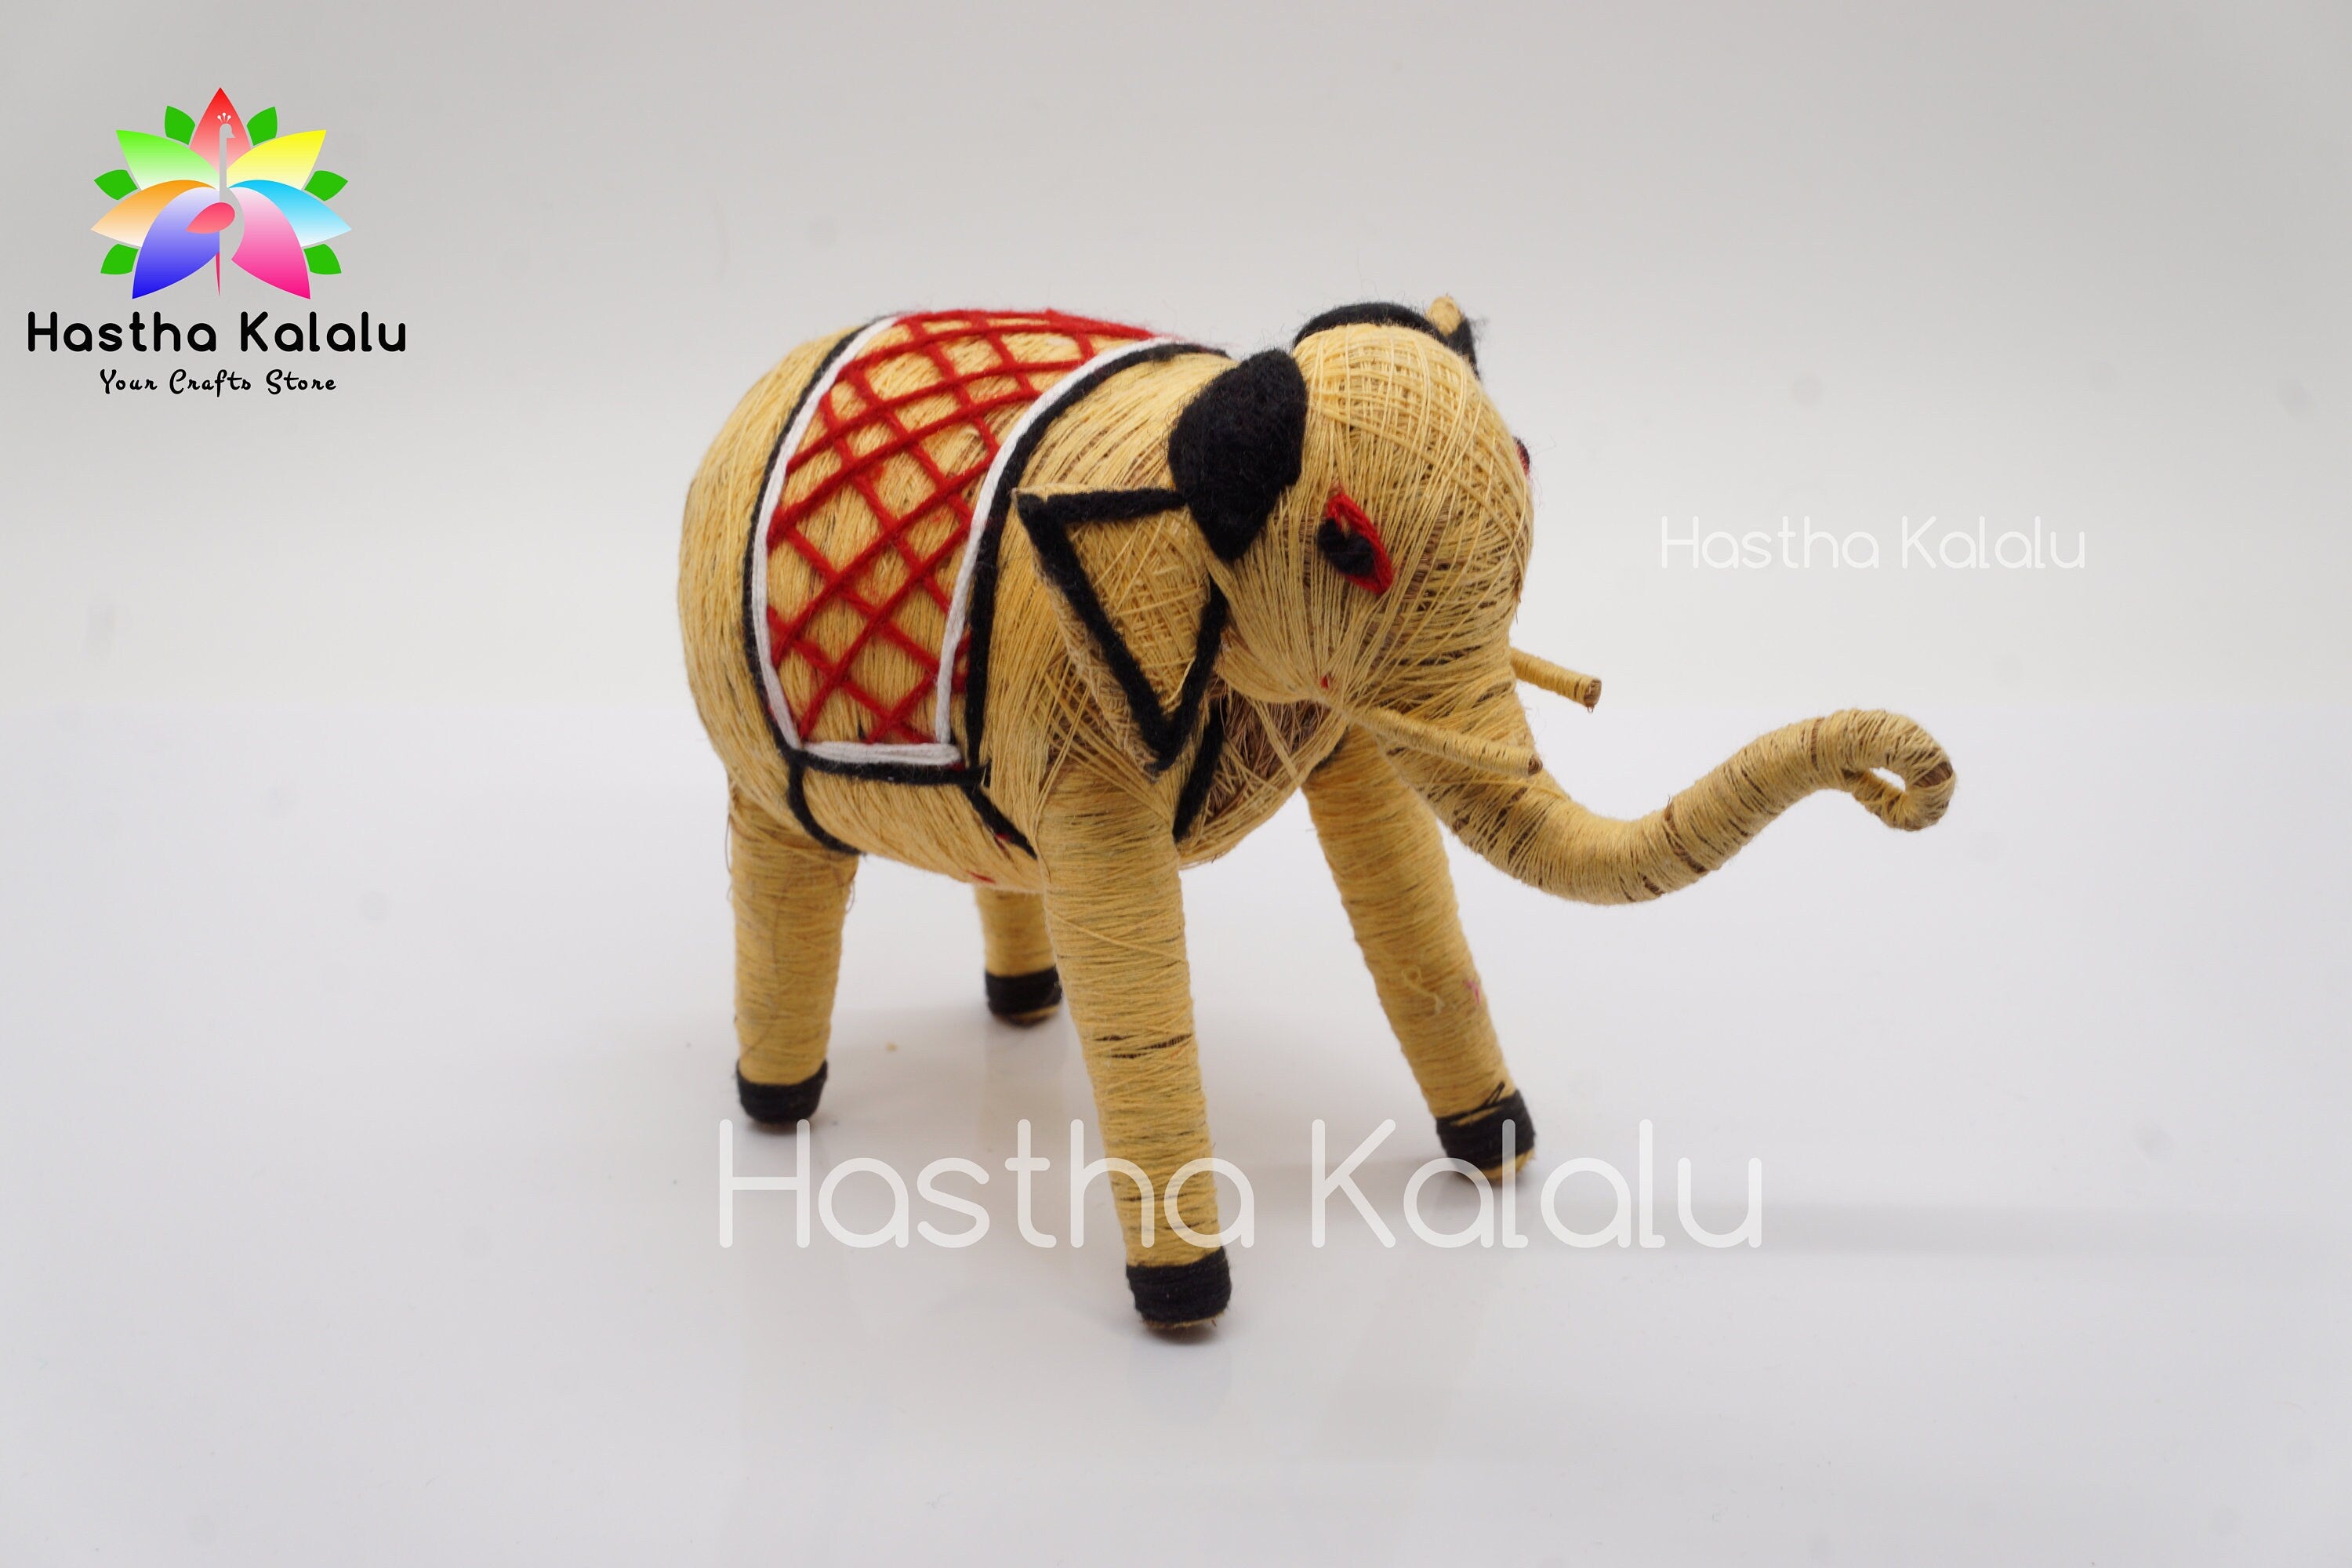 Handmade Coir Made Elephant Doll | Coconut Fiber Crafts | Organic eco-friendly Elephant Toy